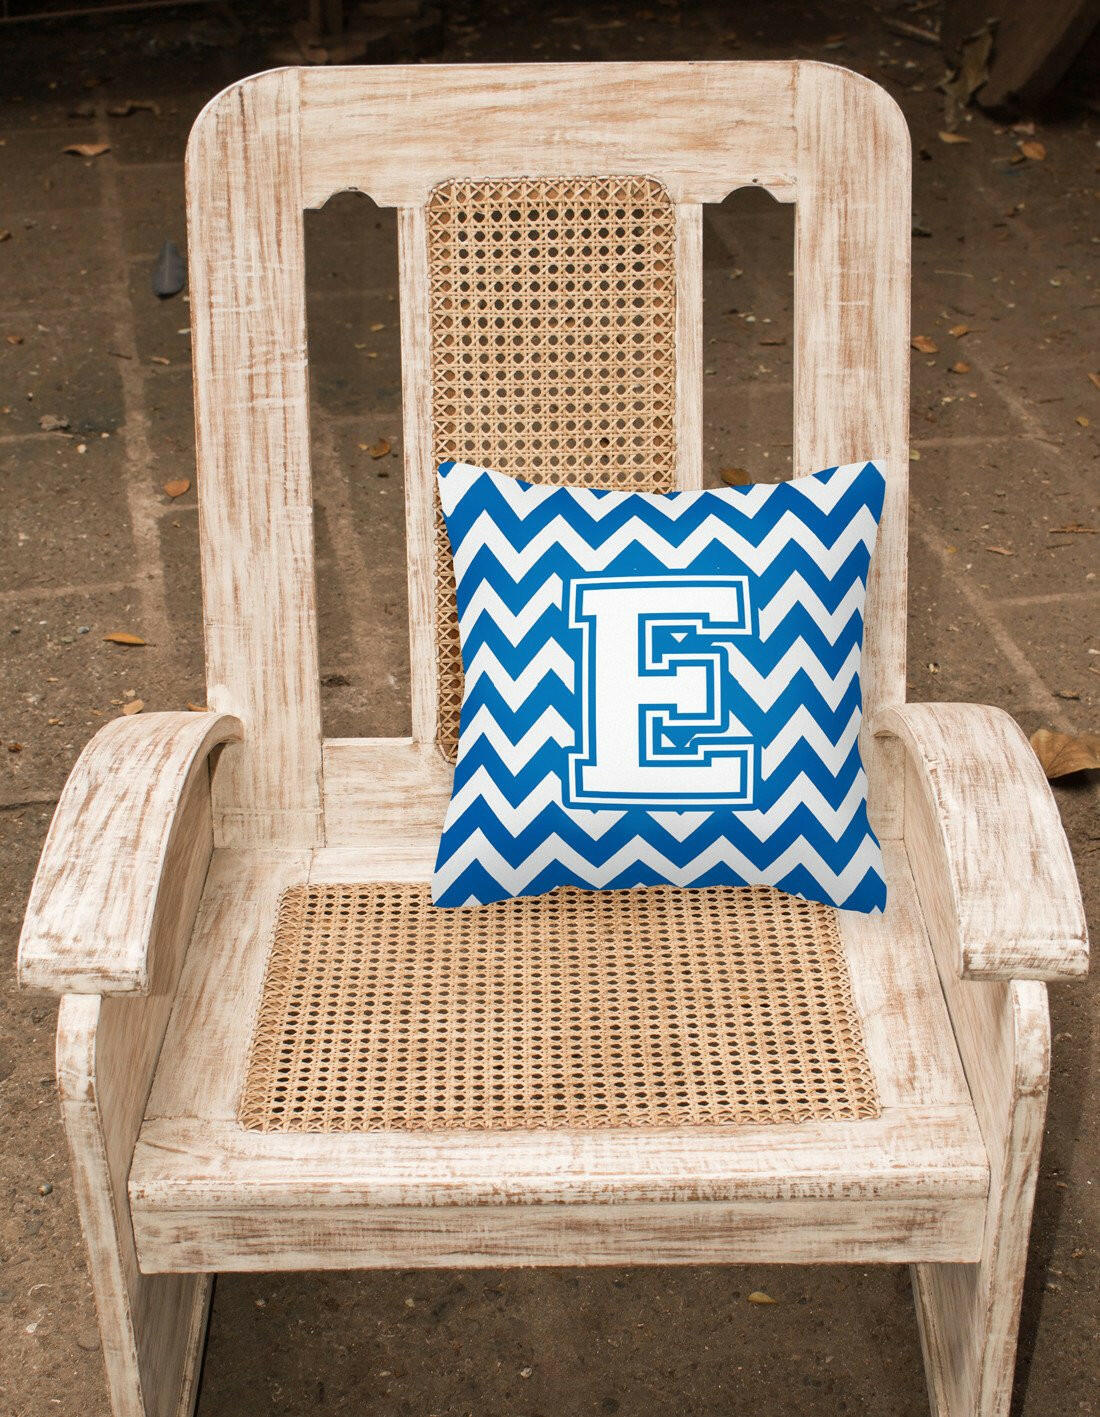 Letter E Chevron Blue and White Fabric Decorative Pillow CJ1045-EPW1414 by Caroline's Treasures